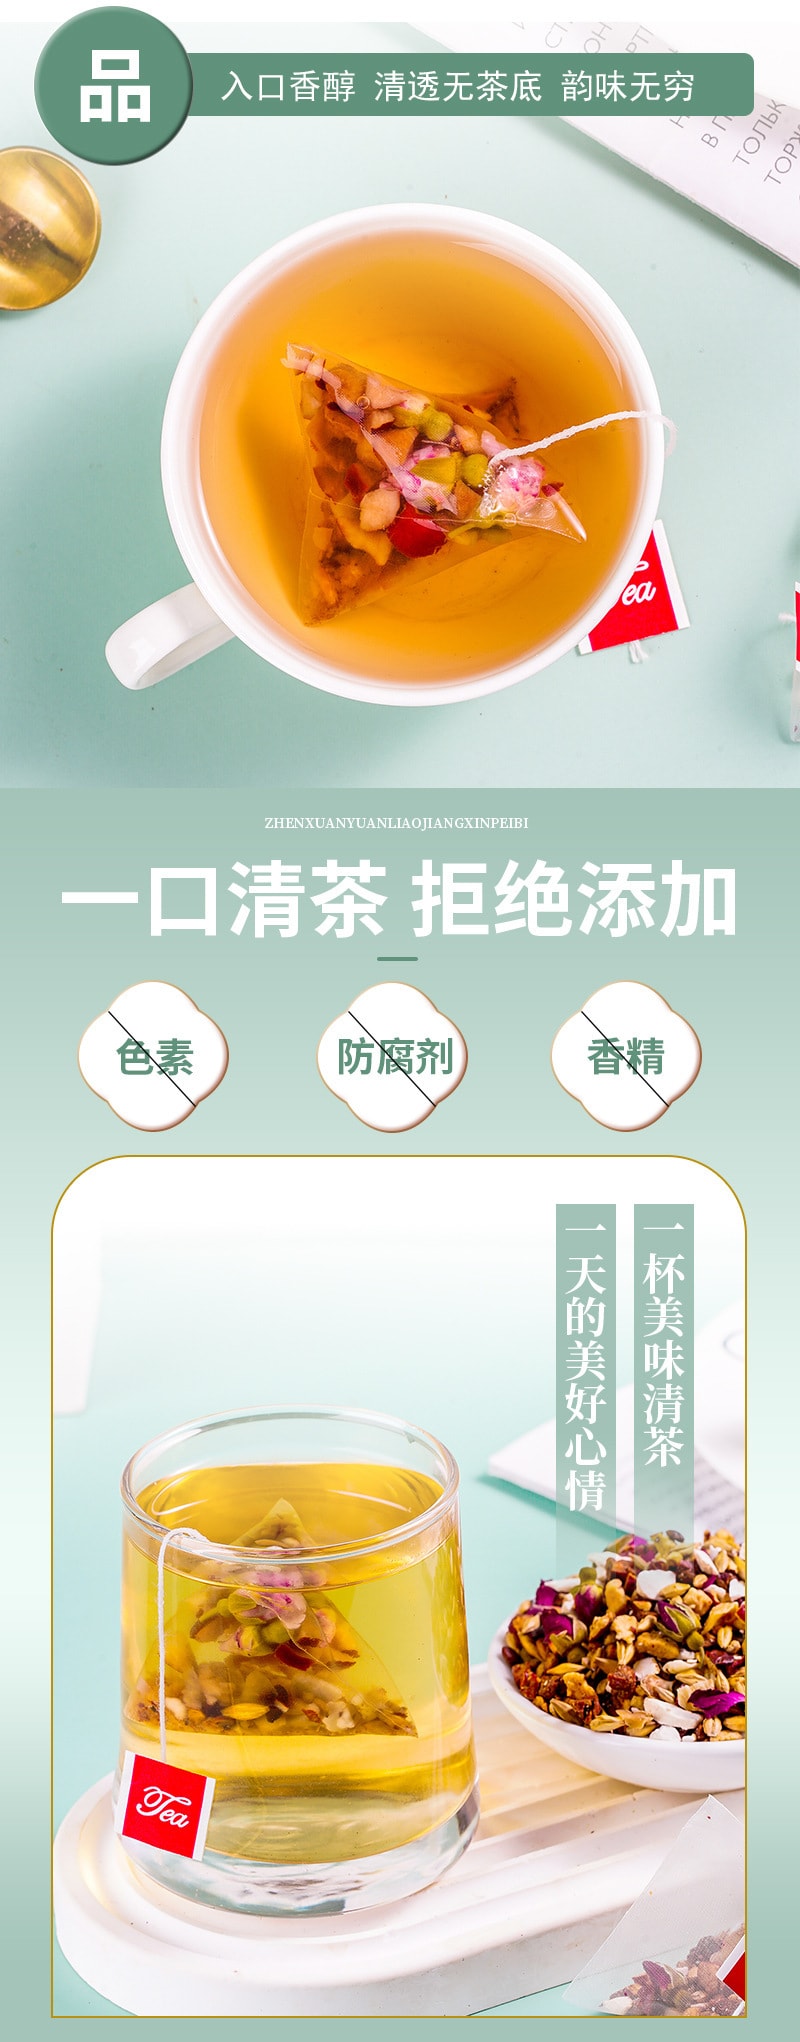 【中国直邮】众智 酸枣仁百合茯苓茶 量贩装 失眠睡眠茶250g(5克×50包)